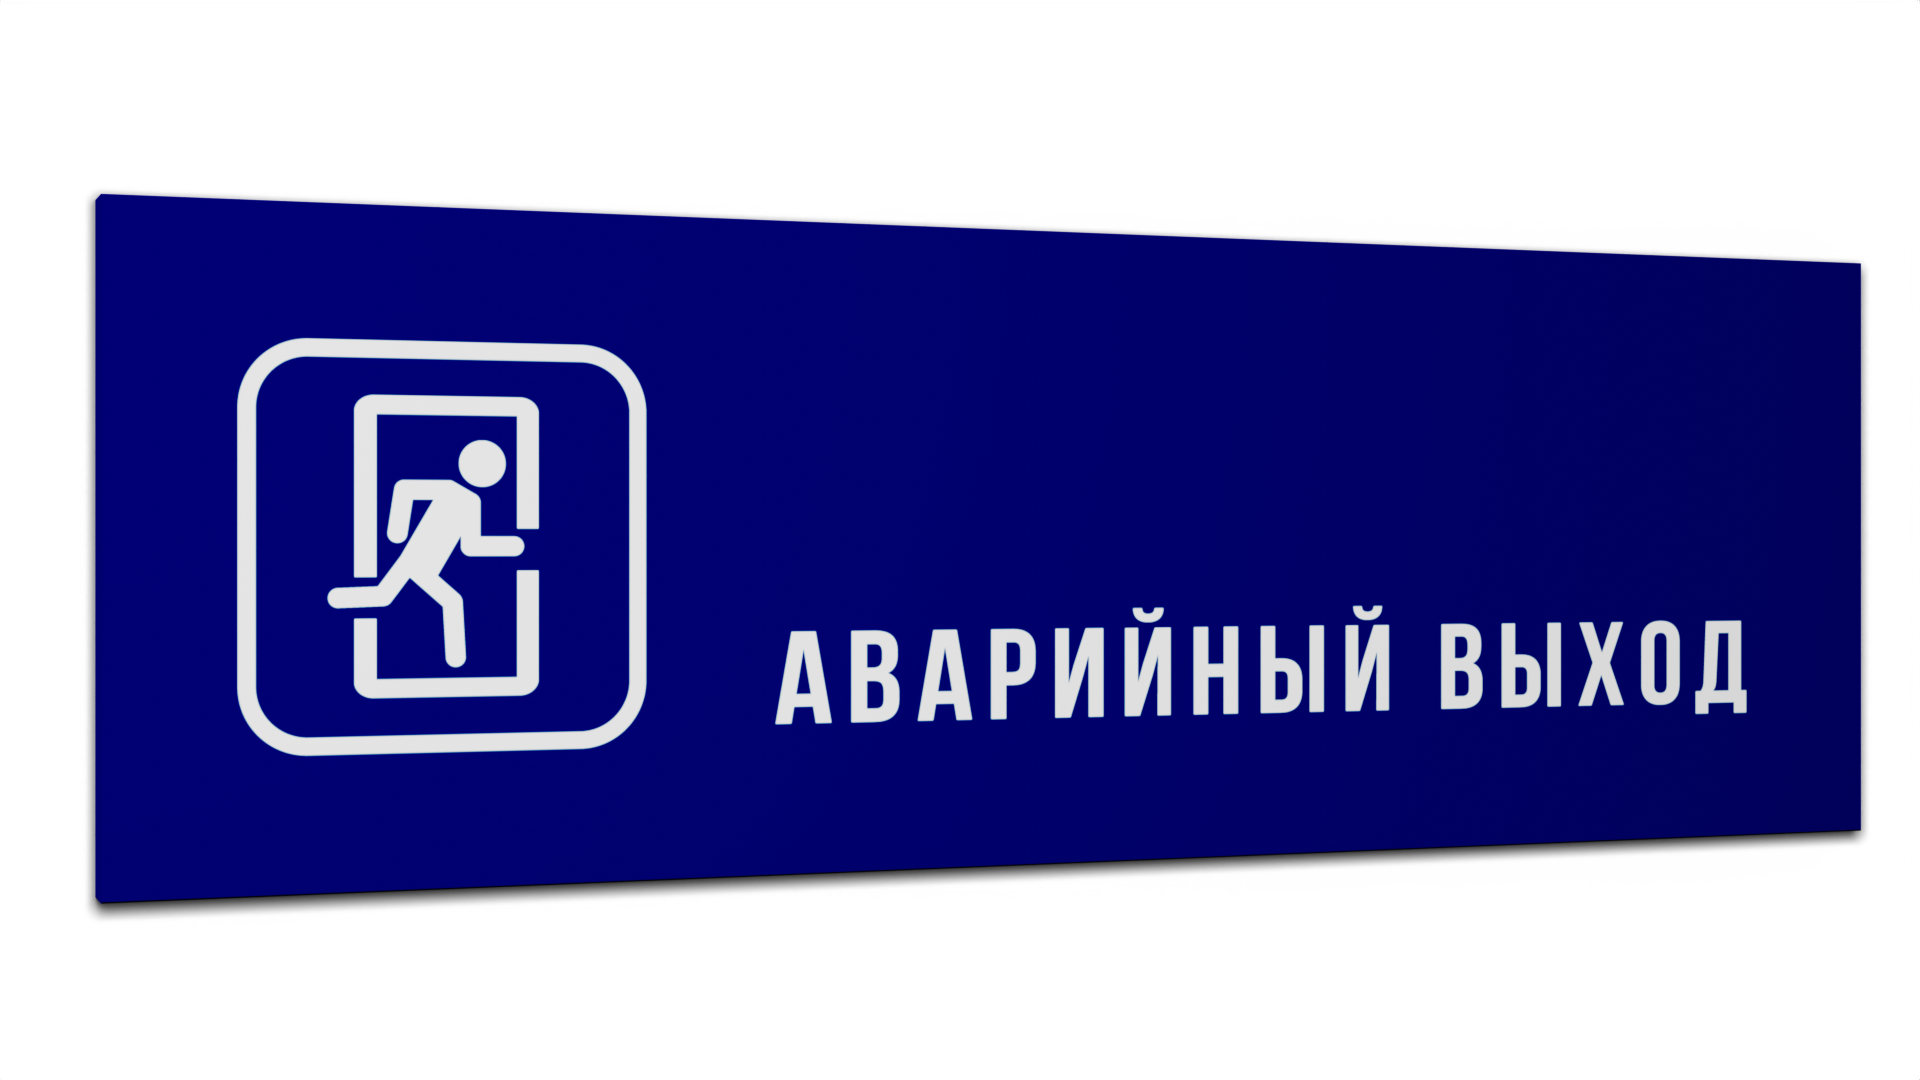 Табличка Аварийный выход, Синяя матовая, 30 см х 10 см